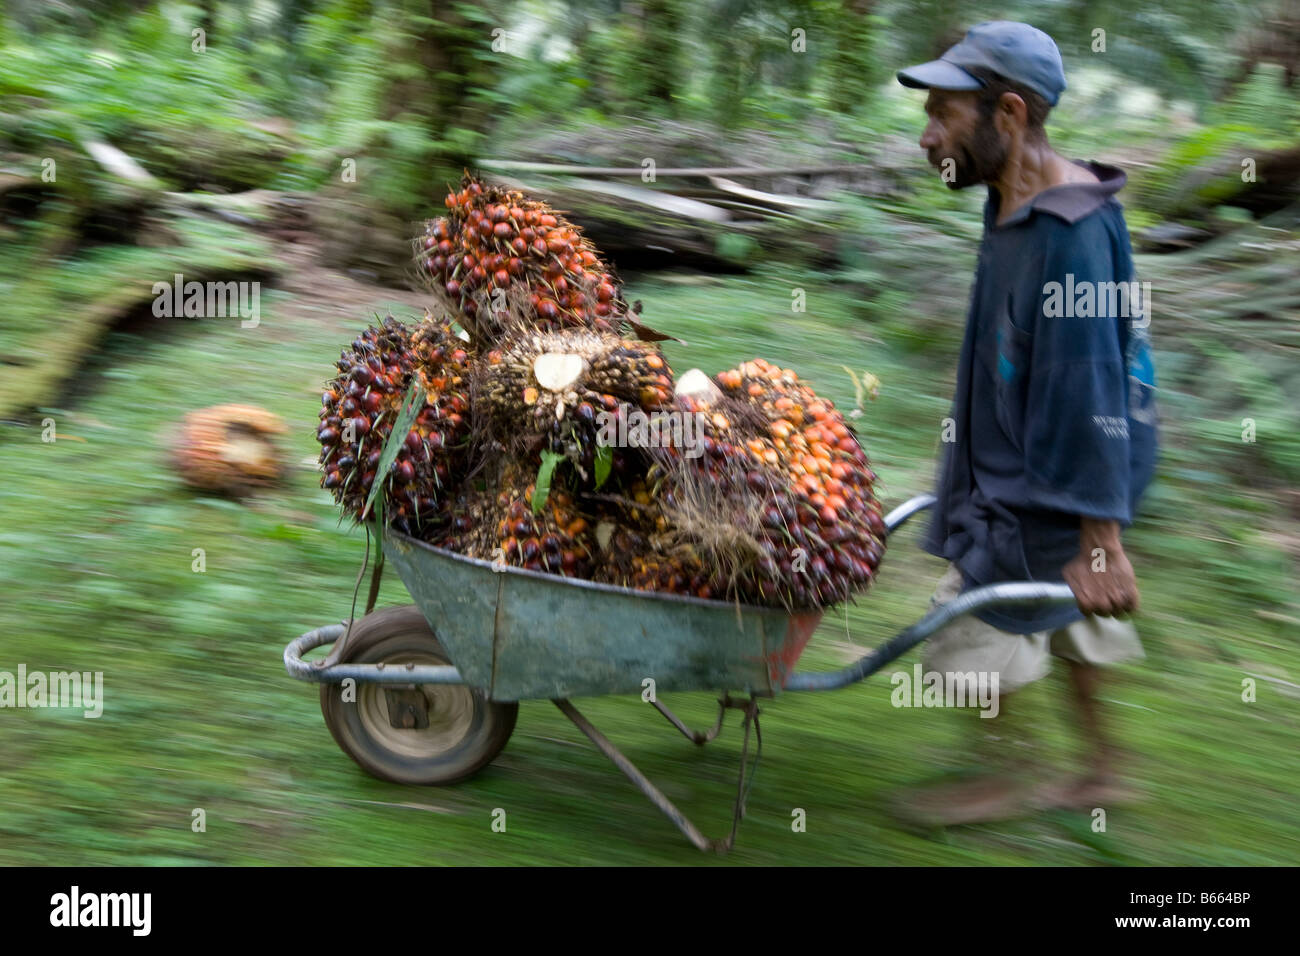 Los trabajadores cortando y la recolección de frutos de palma de aceite, en el oeste de la isla de Nueva Bretaña, Papúa Nueva Guinea Foto de stock